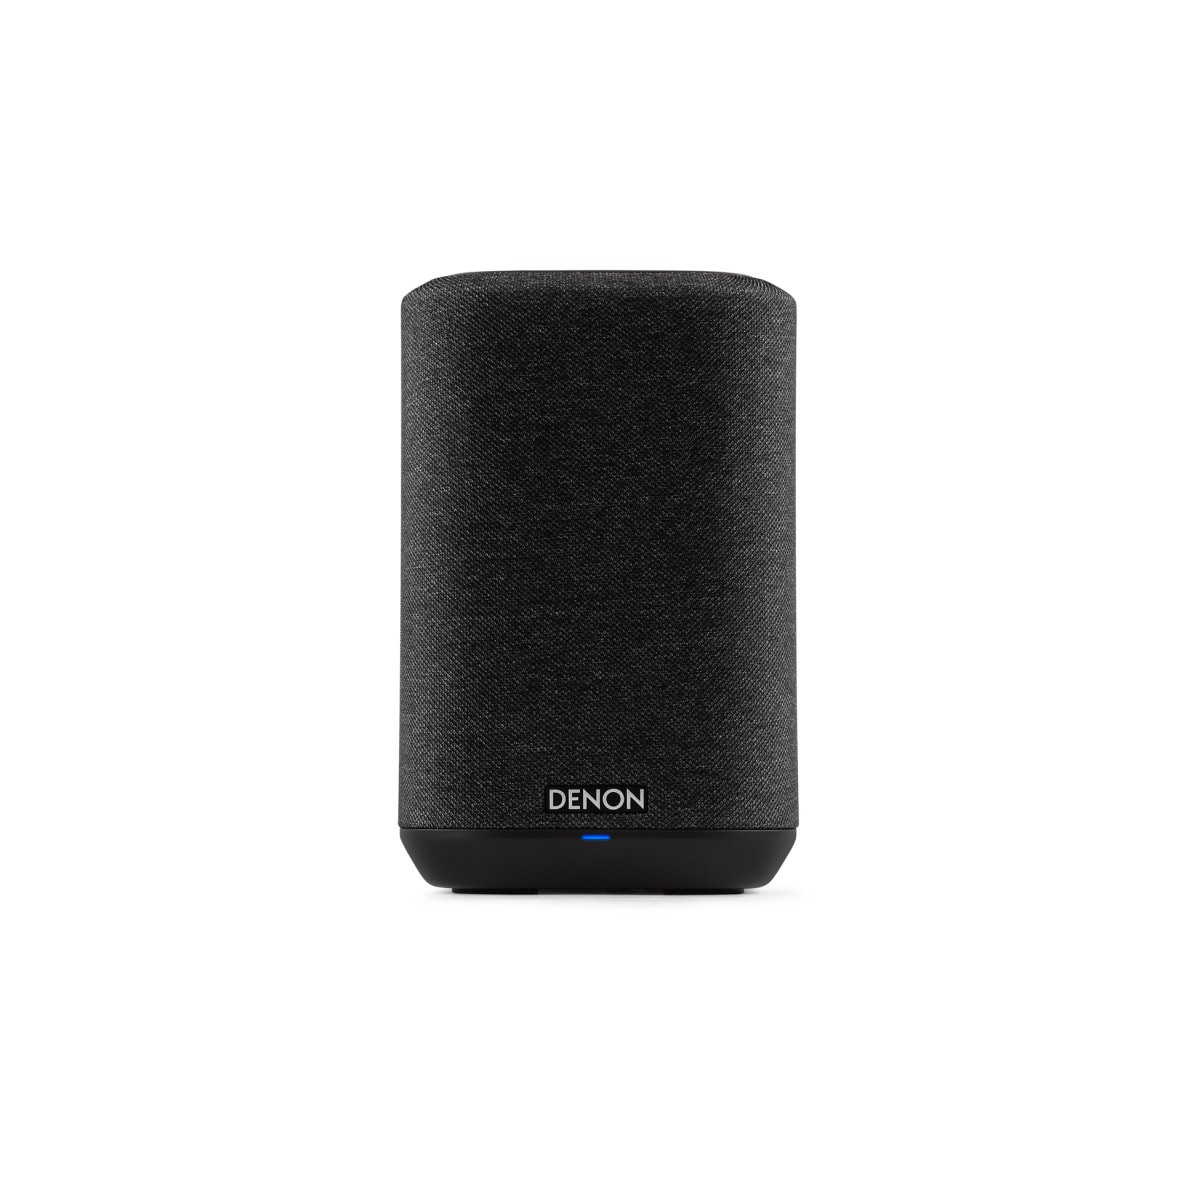 Hier sehen Sie den Artikel Home 150 Wireless Speaker black aus der Kategorie Wireless Lautsprecher. Dieser Artikel ist erhältlich bei cebrands.ch